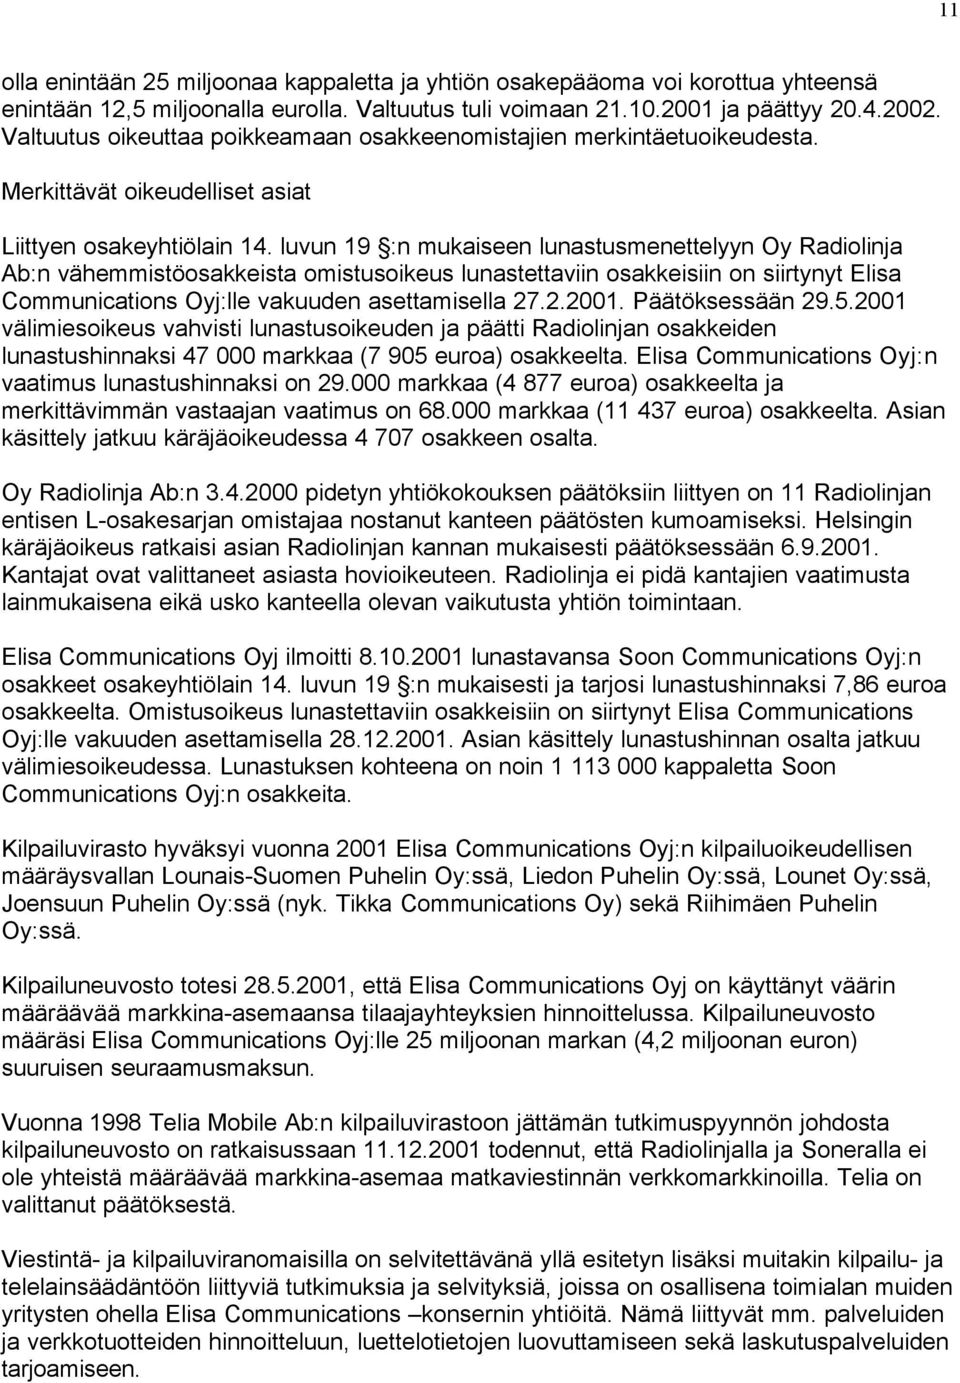 luvun 19 :n mukaiseen lunastusmenettelyyn Oy Radiolinja Ab:n vähemmistöosakkeista omistusoikeus lunastettaviin osakkeisiin on siirtynyt Elisa Communications Oyj:lle vakuuden asettamisella 27.2.2001.